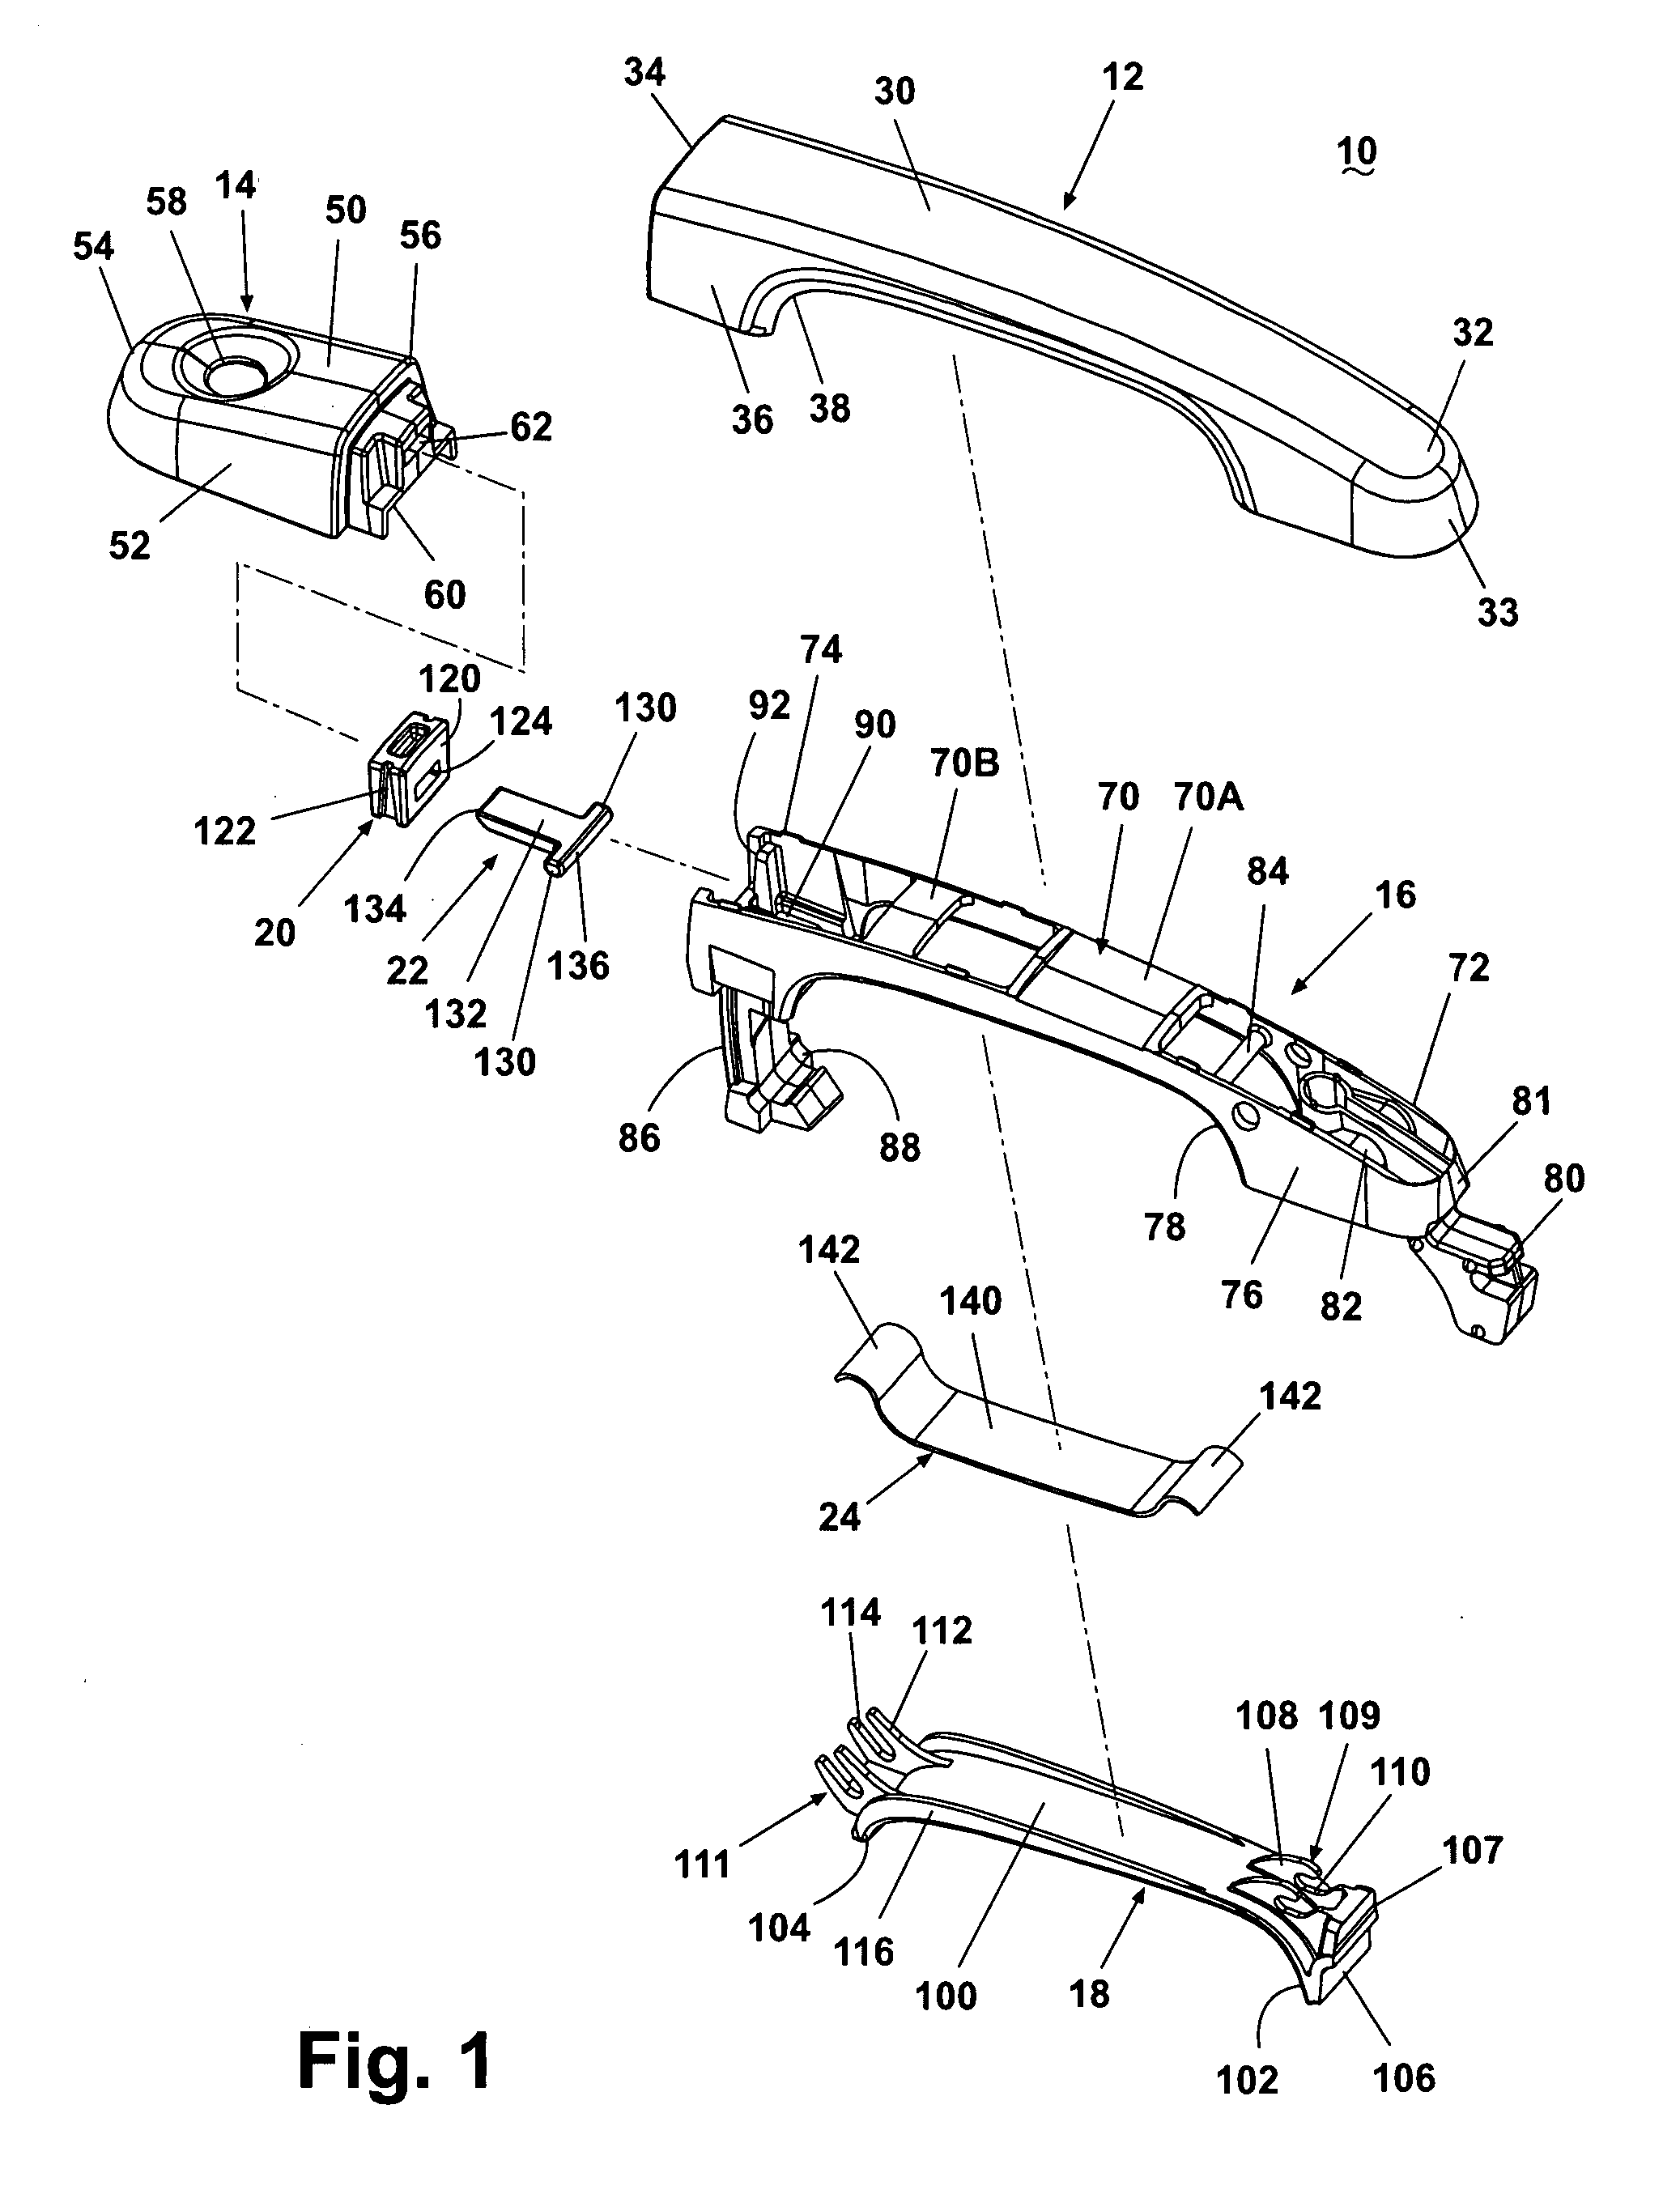 Vehicular door handle including secondary latch